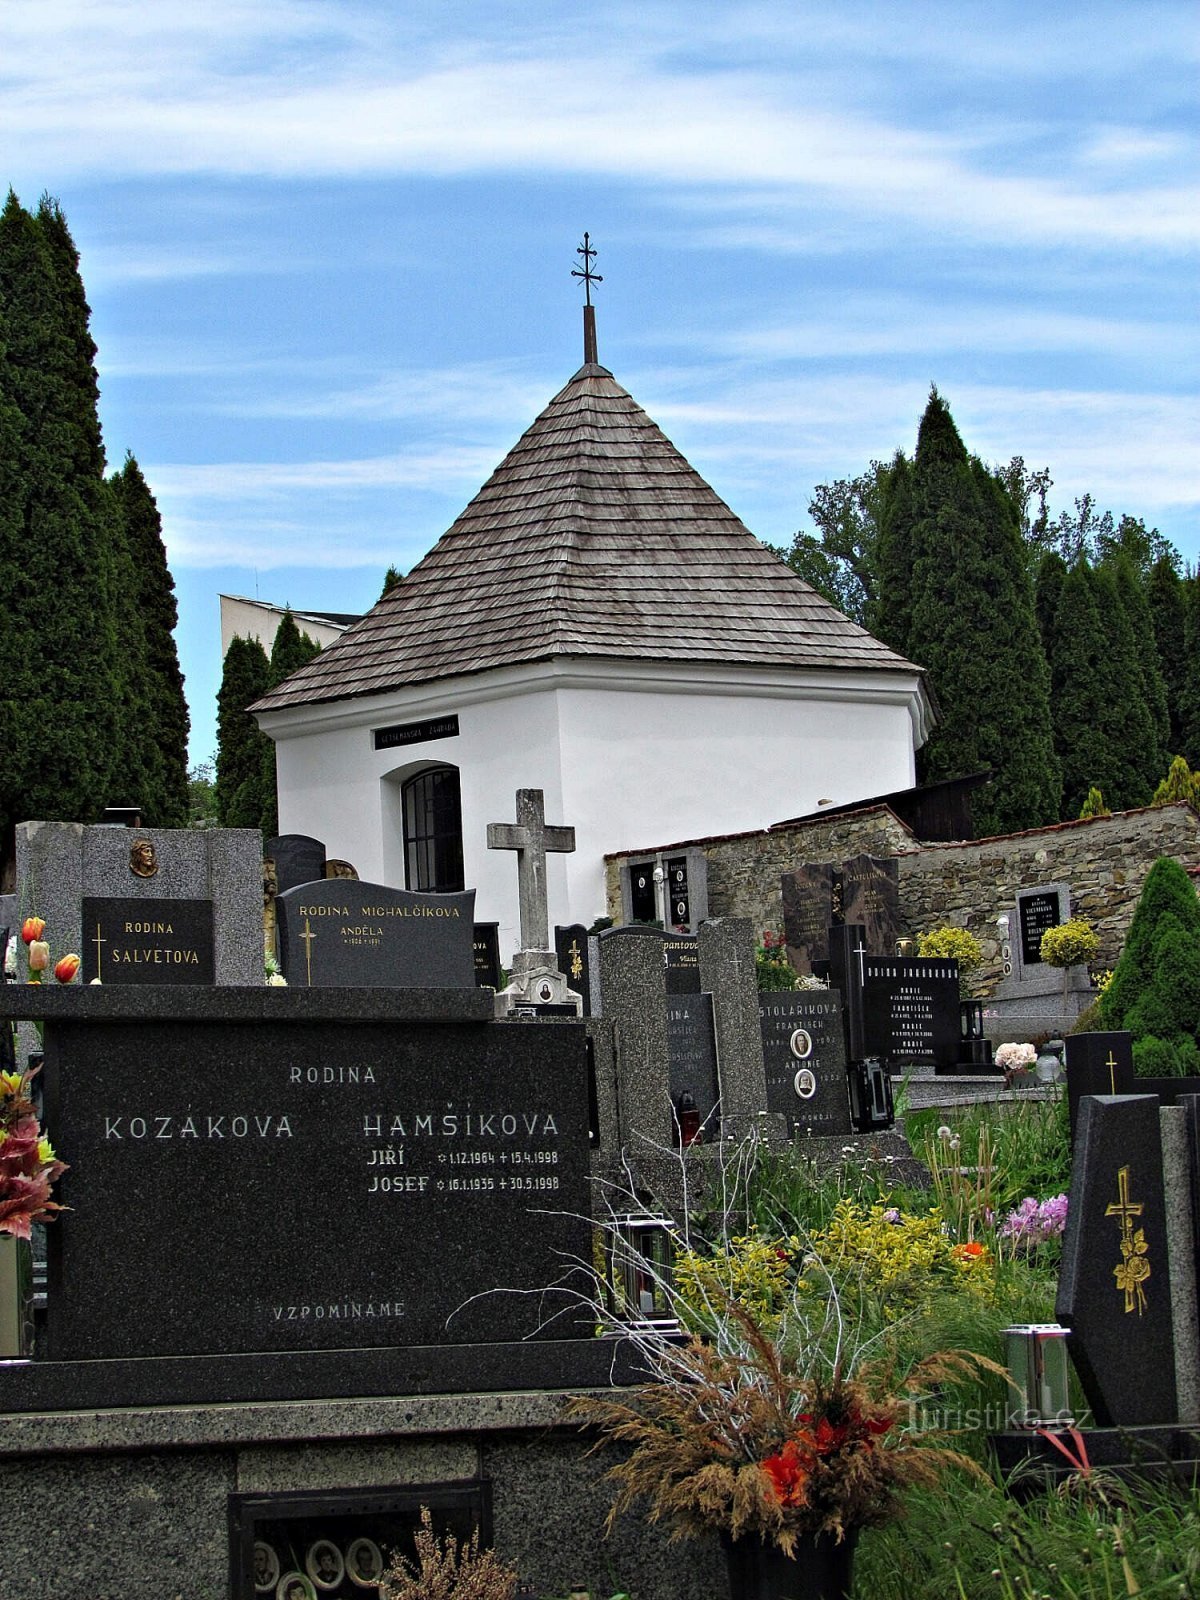 ボイコヴィツェ市墓地